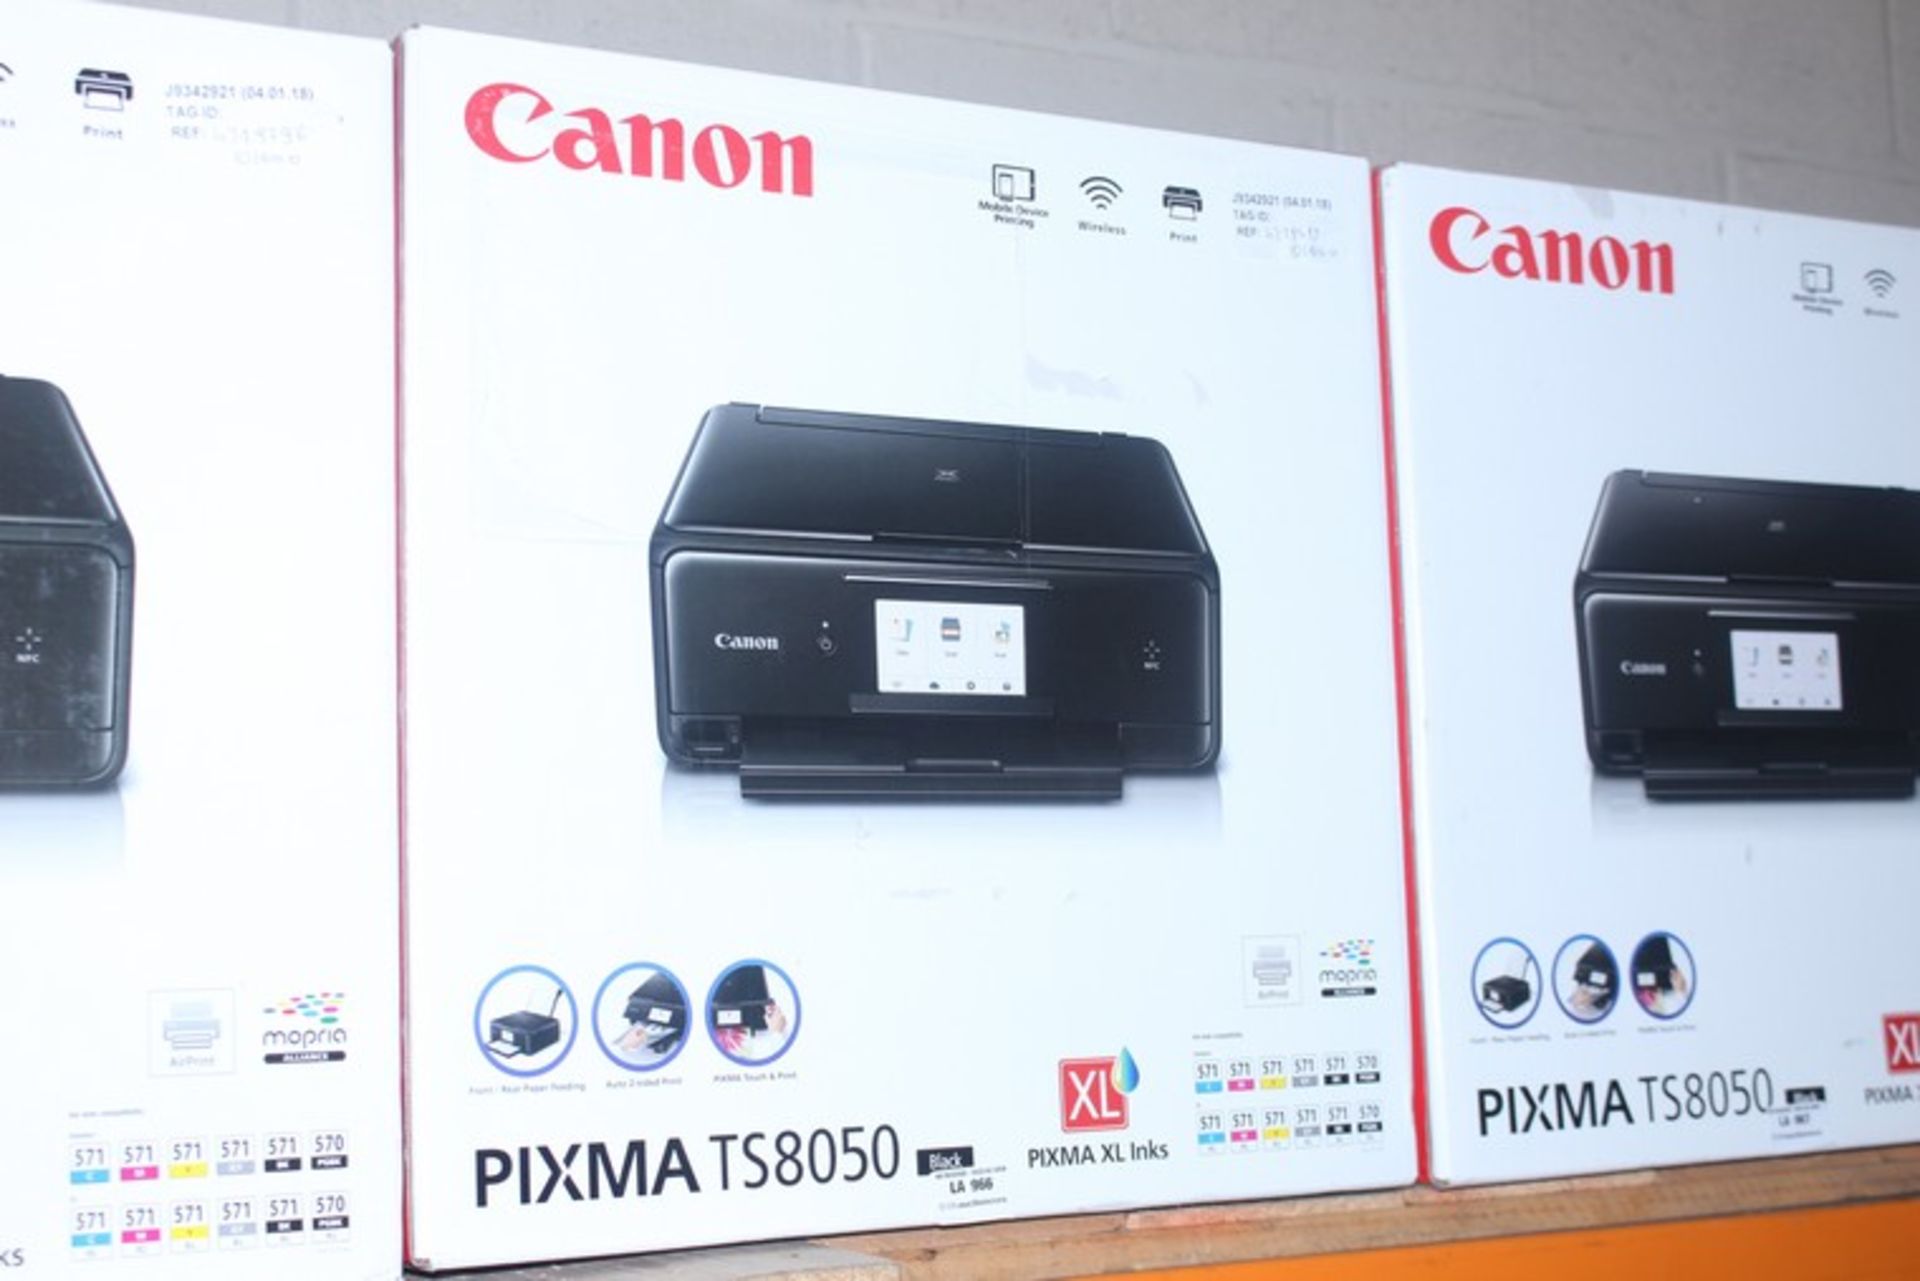 1 x CANON PIXMA TS8050 WIRELESS PRINTER SCANNER COPIER IN BLACK RRP £100 (04.01.18) (4719430) *